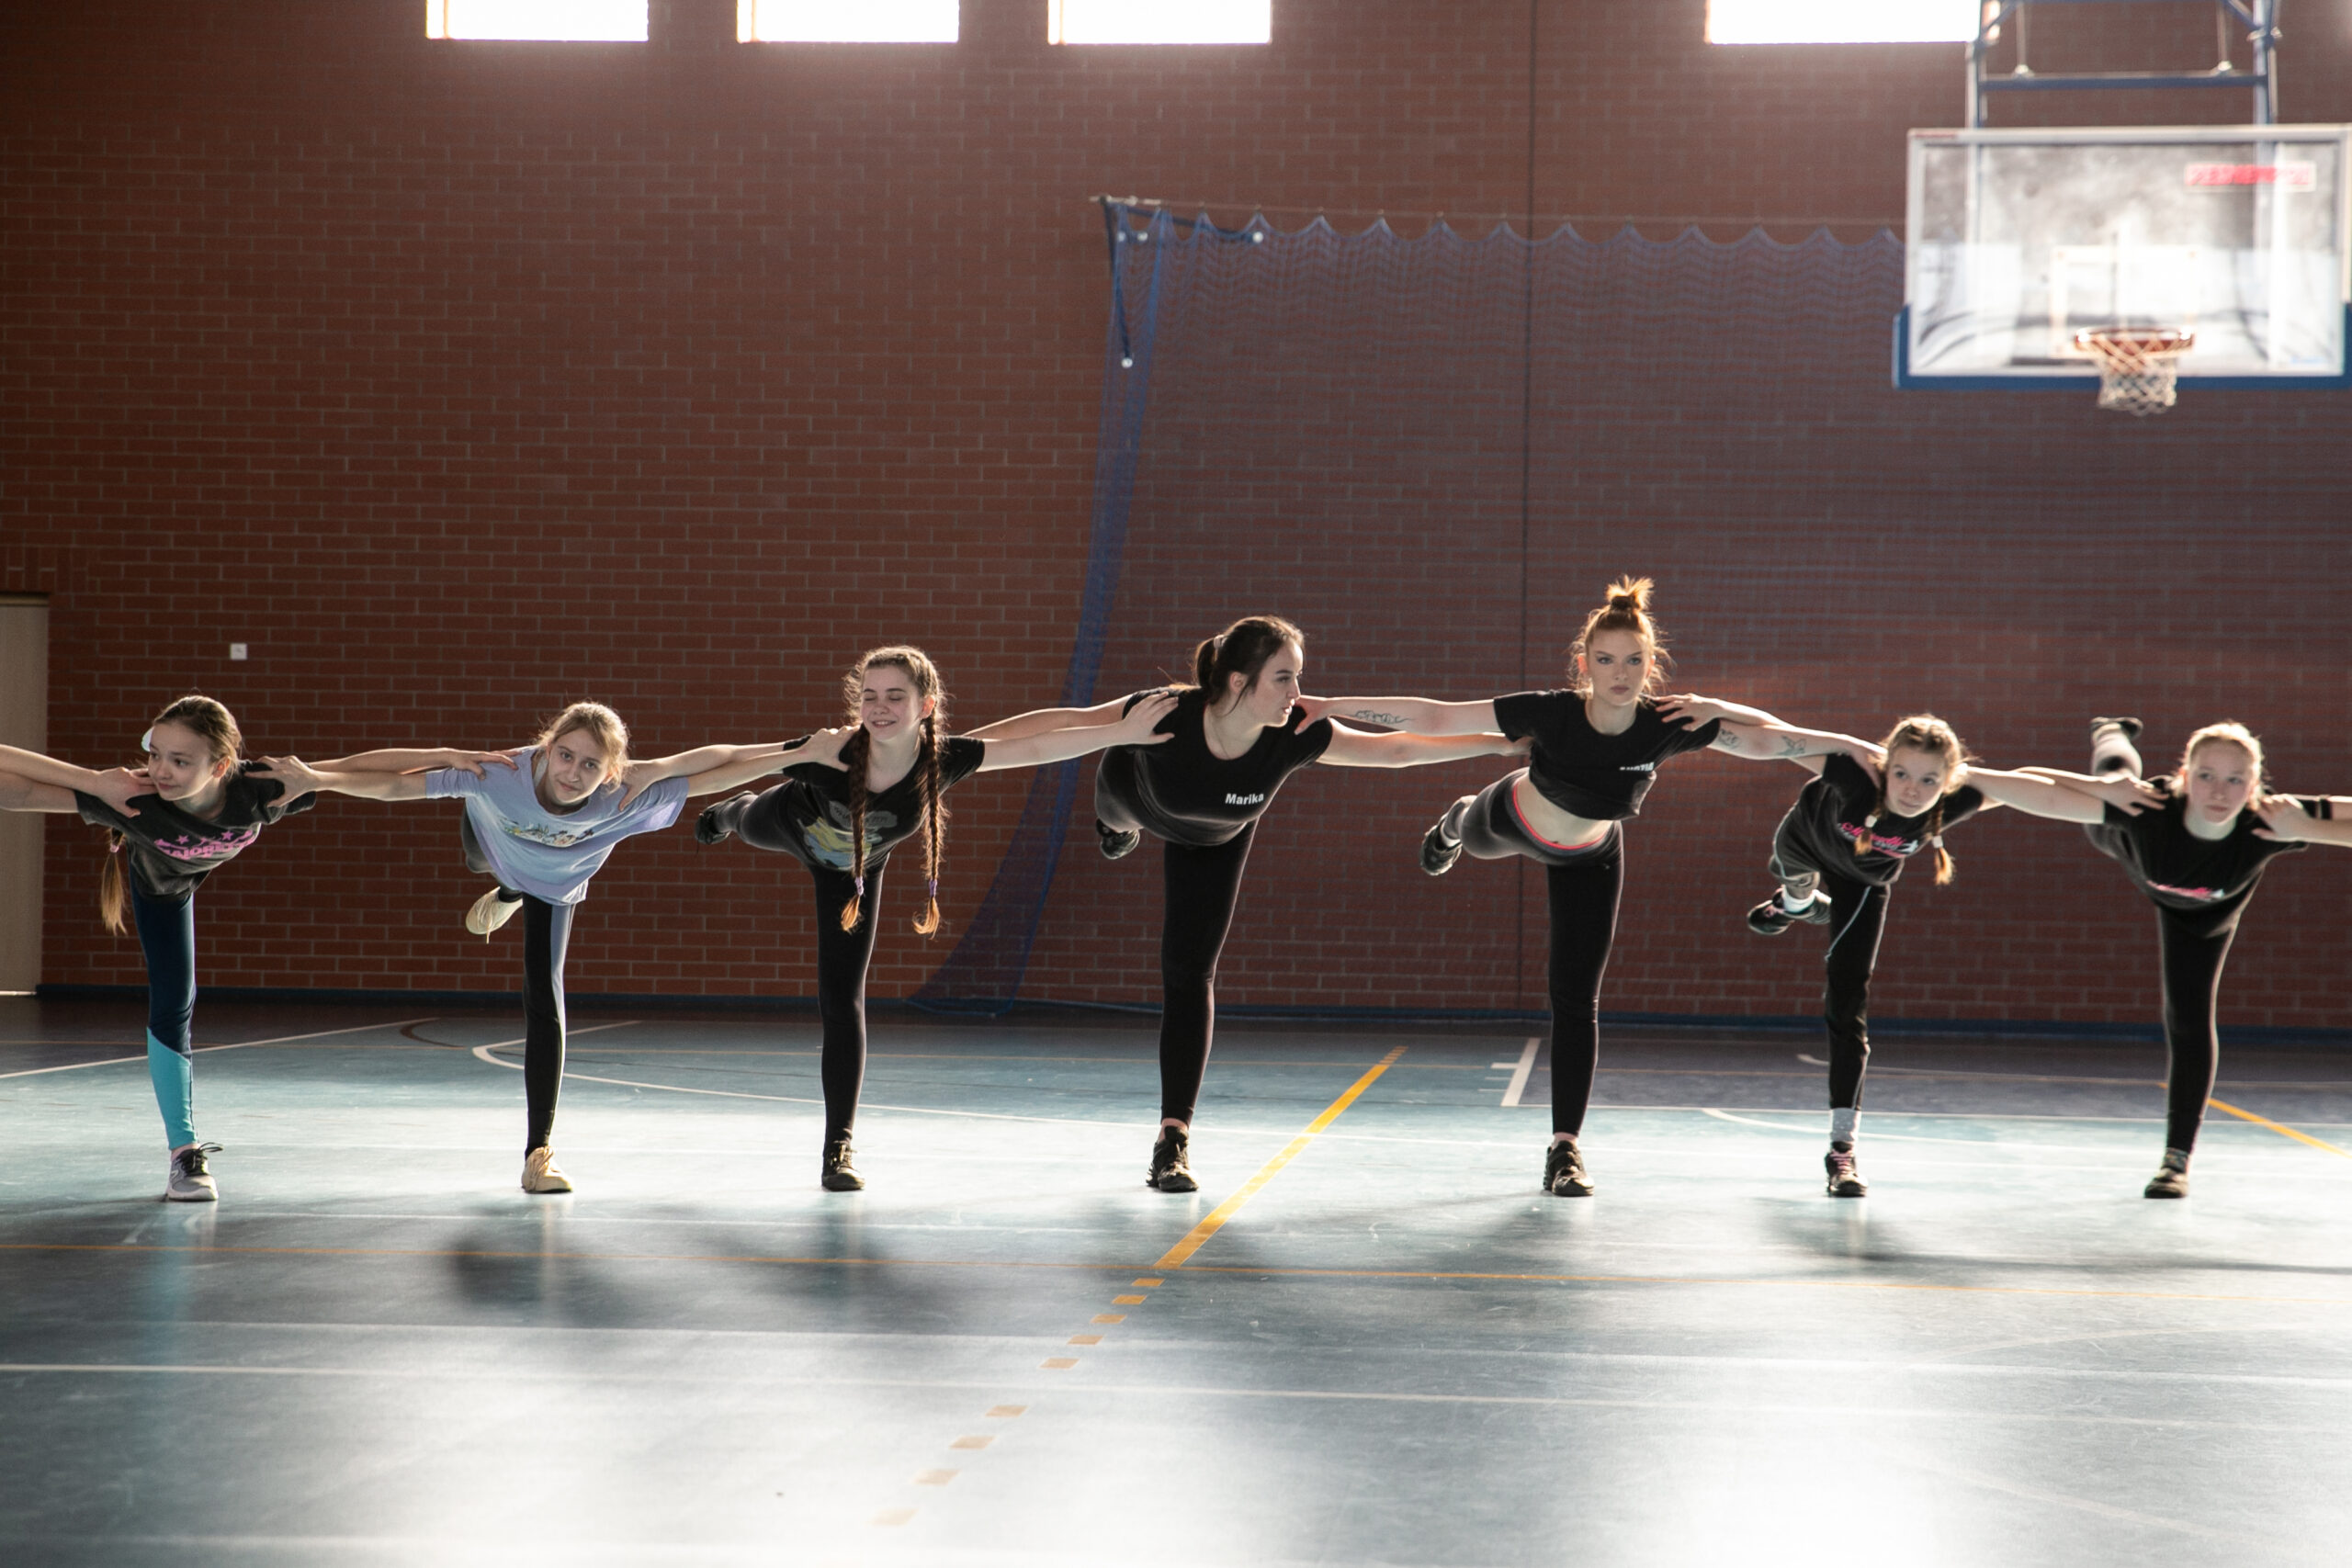 dziewczynki na sali gimnastycznej wykonujące ćwiczenie taneczne